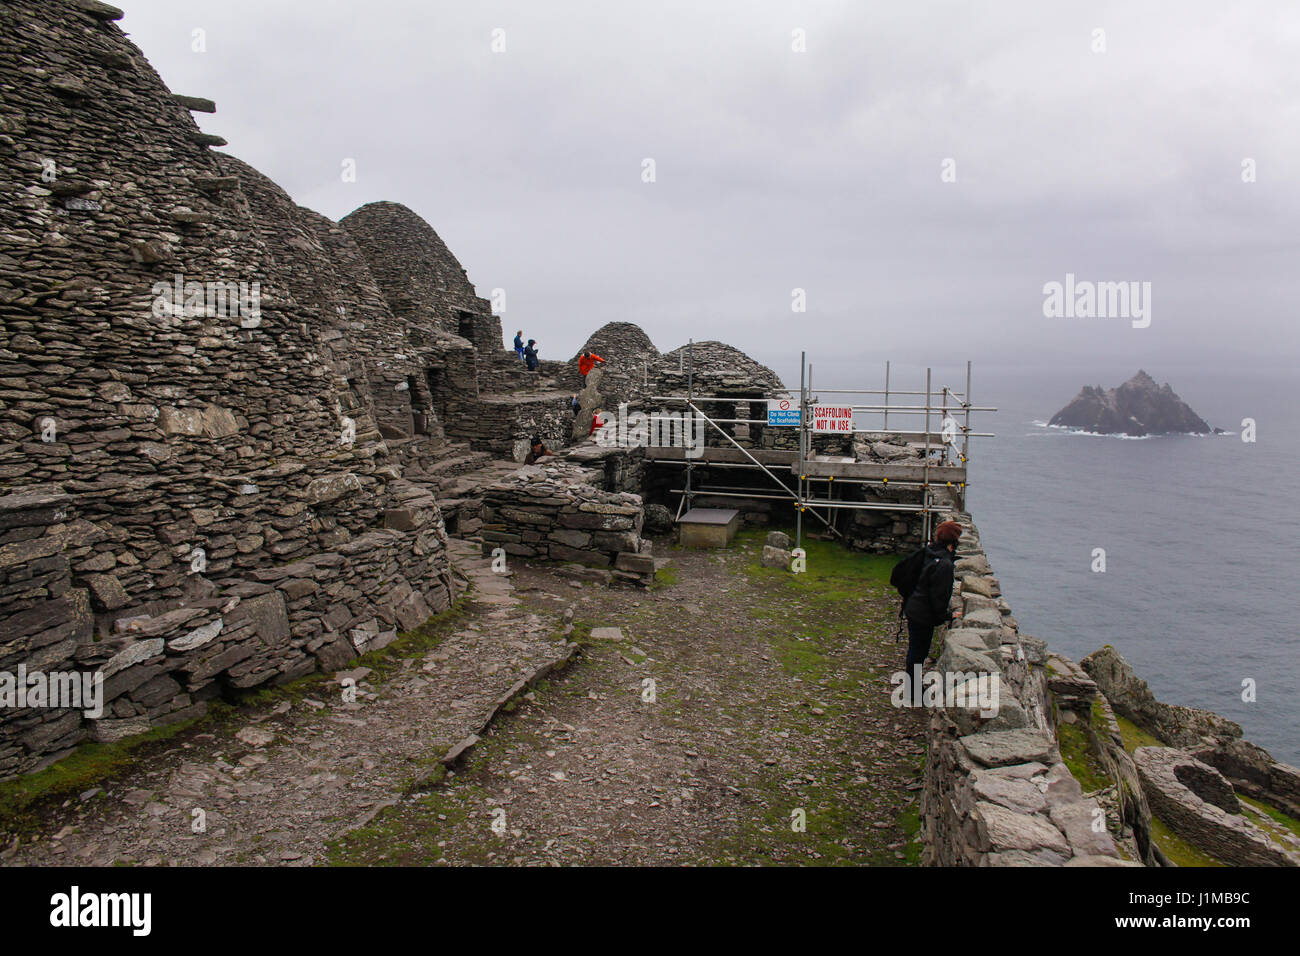 Luogo di lavoro essendo effettuata su Skellig Michael, un sito Patrimonio Mondiale dell'Unesco nella Contea di Kerry, Irlanda. Foto Stock